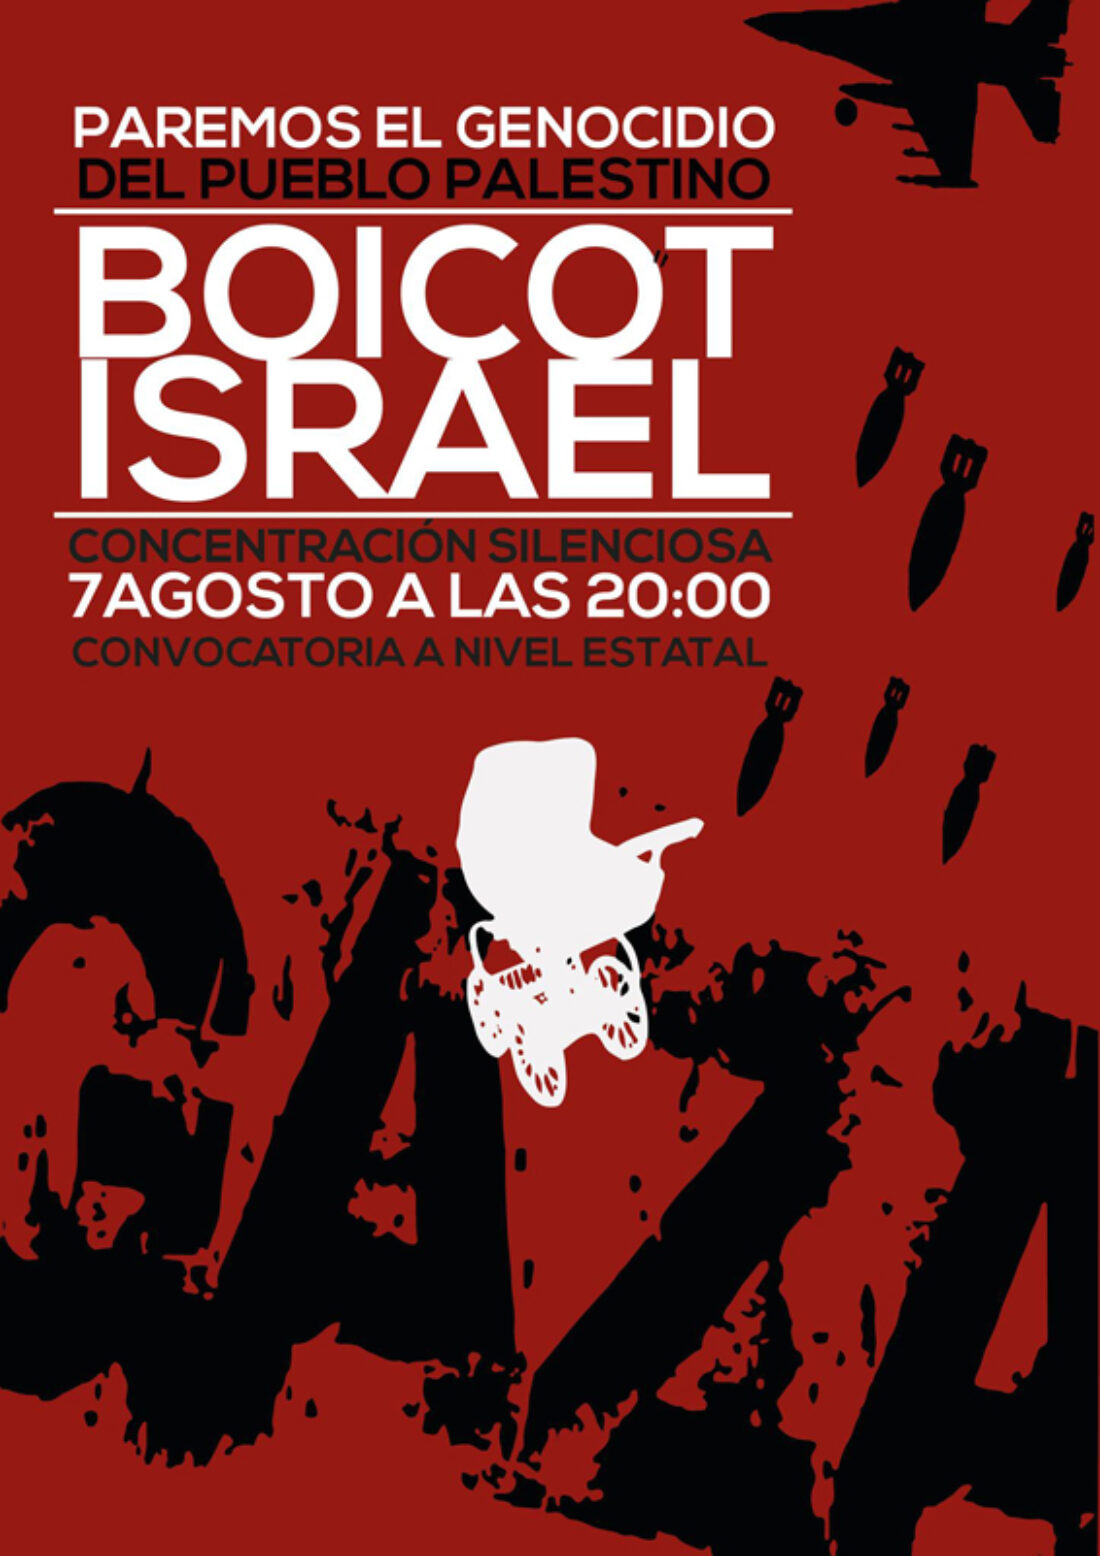 7-a: Concentración silenciosa «Paremos el genocidio del pueblo palestino. Boicot Israel»